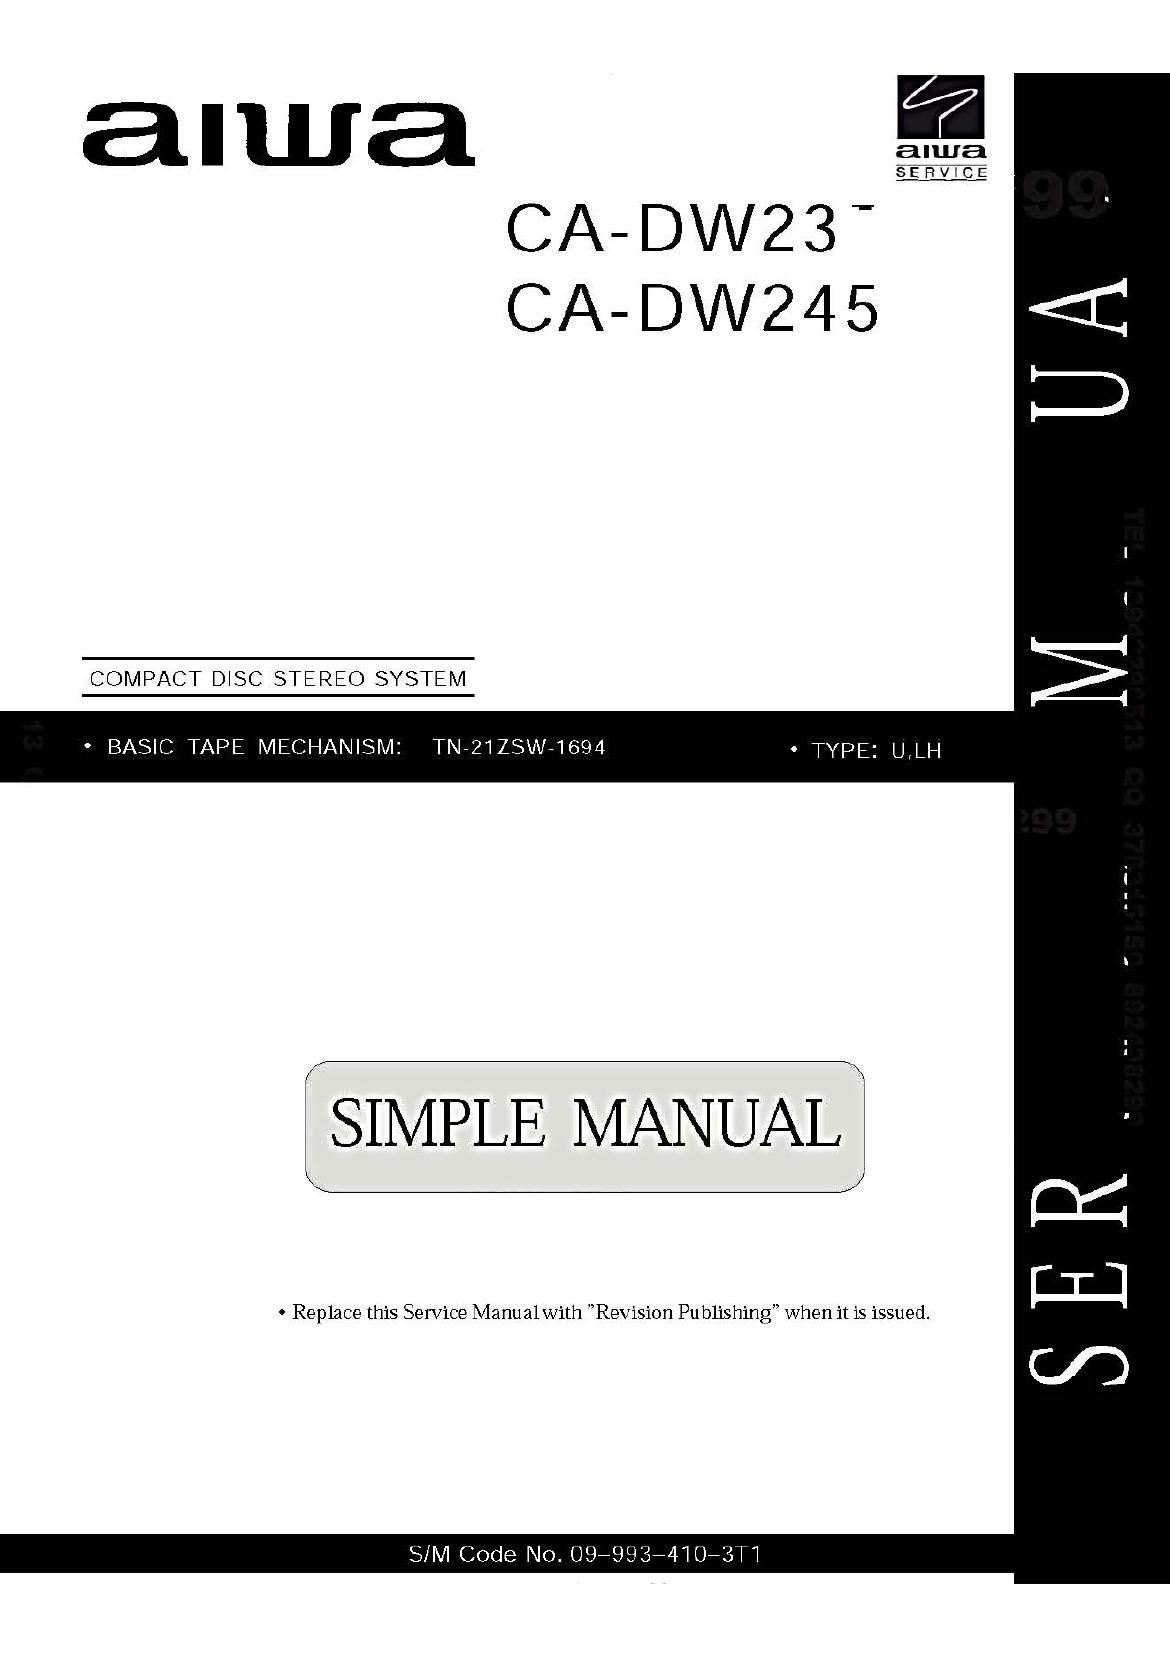 Aiwa CA DW245 Service Manual